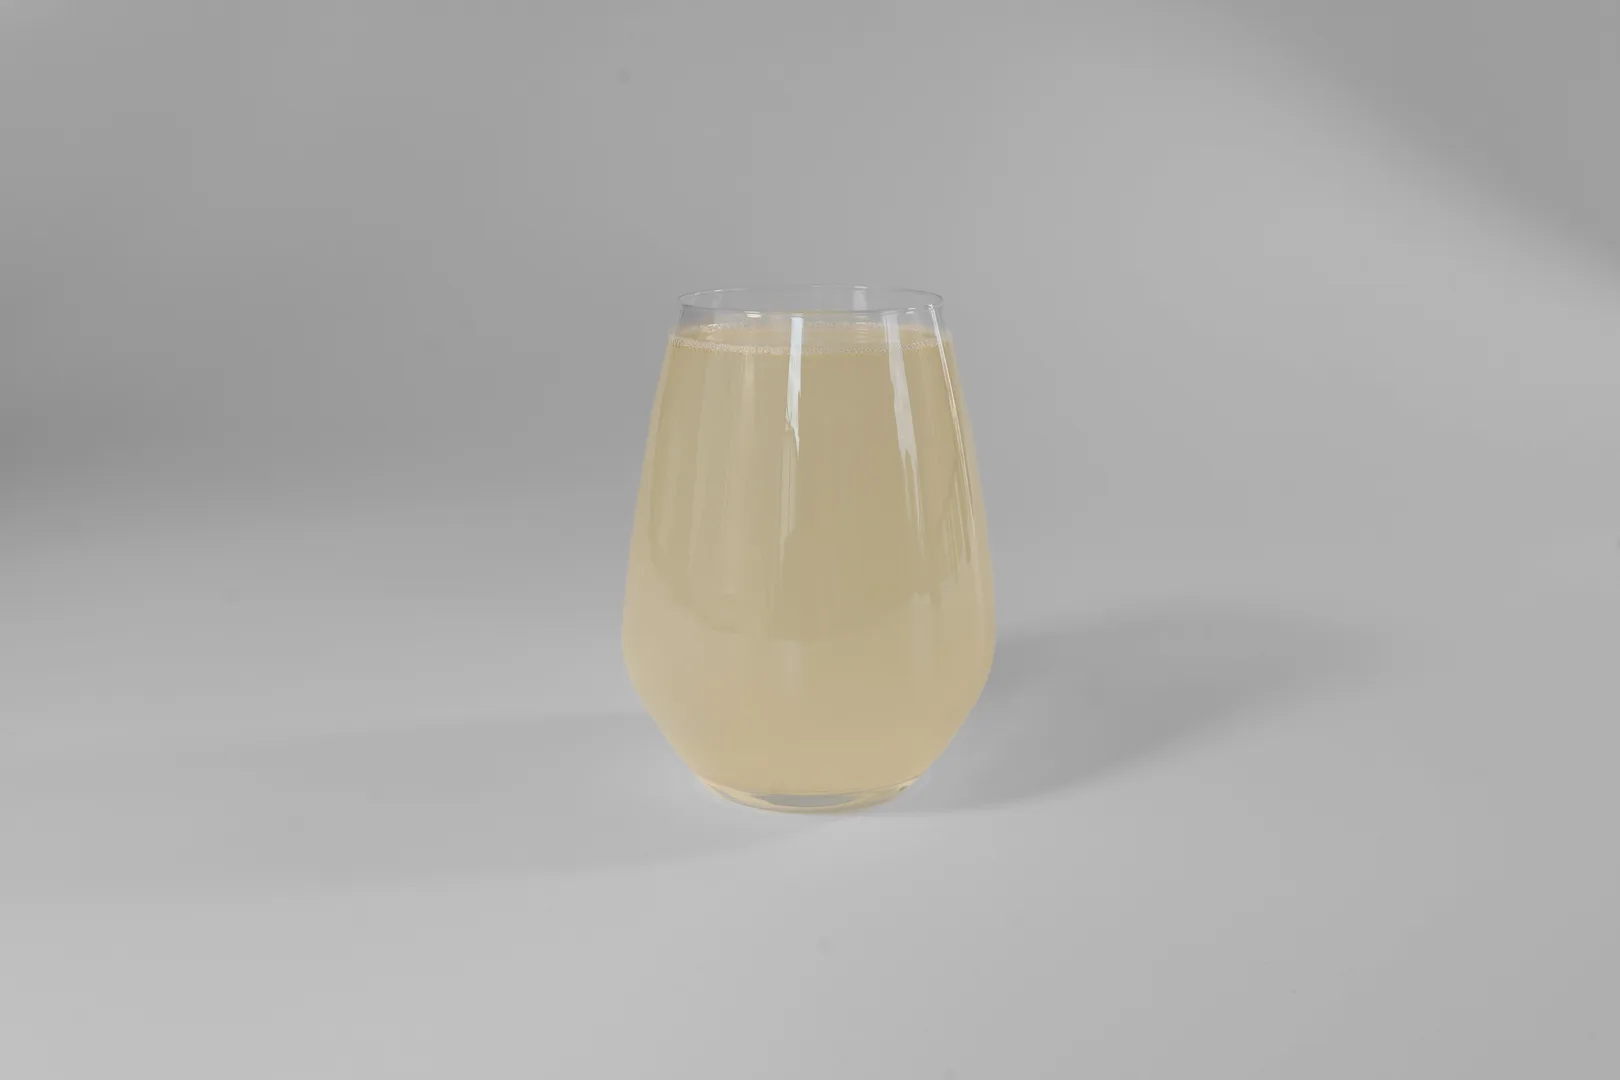 Glas mit Ingwer & Zitrone Limonade